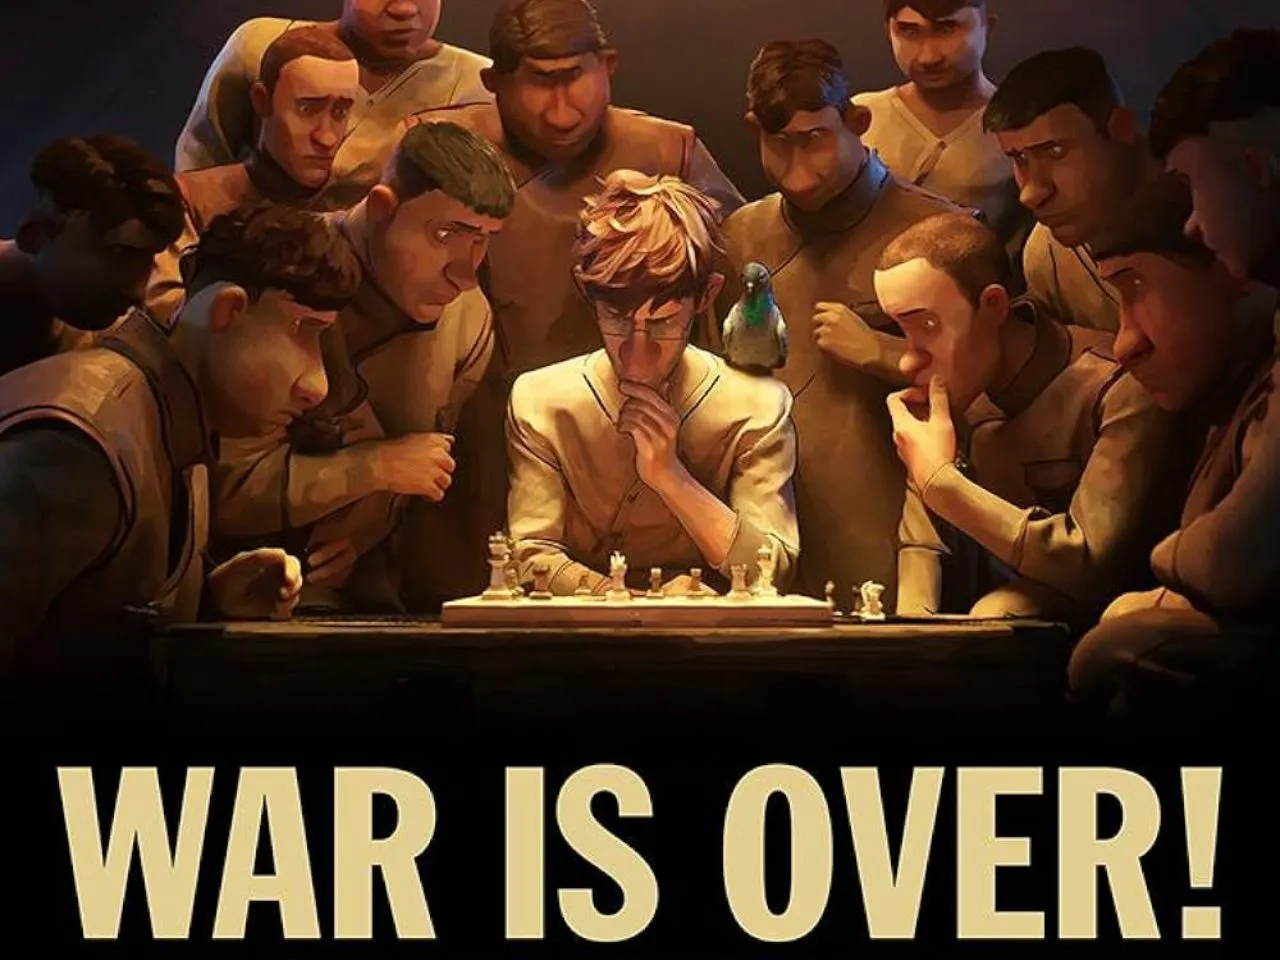 War is Over!